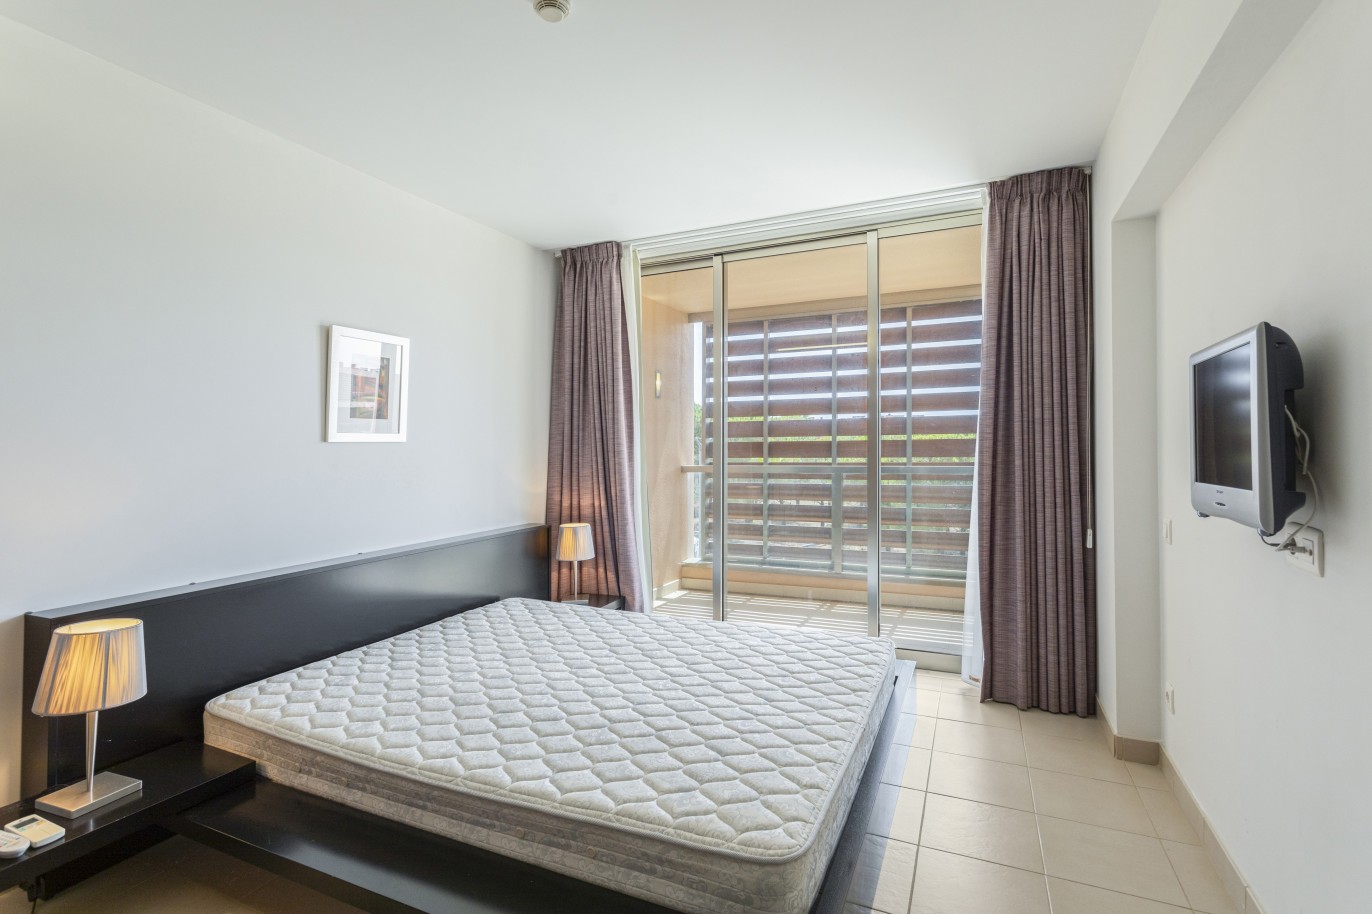 1 bedroom apartment in luxury condominium, for sale in Salgados, Algarve_228196